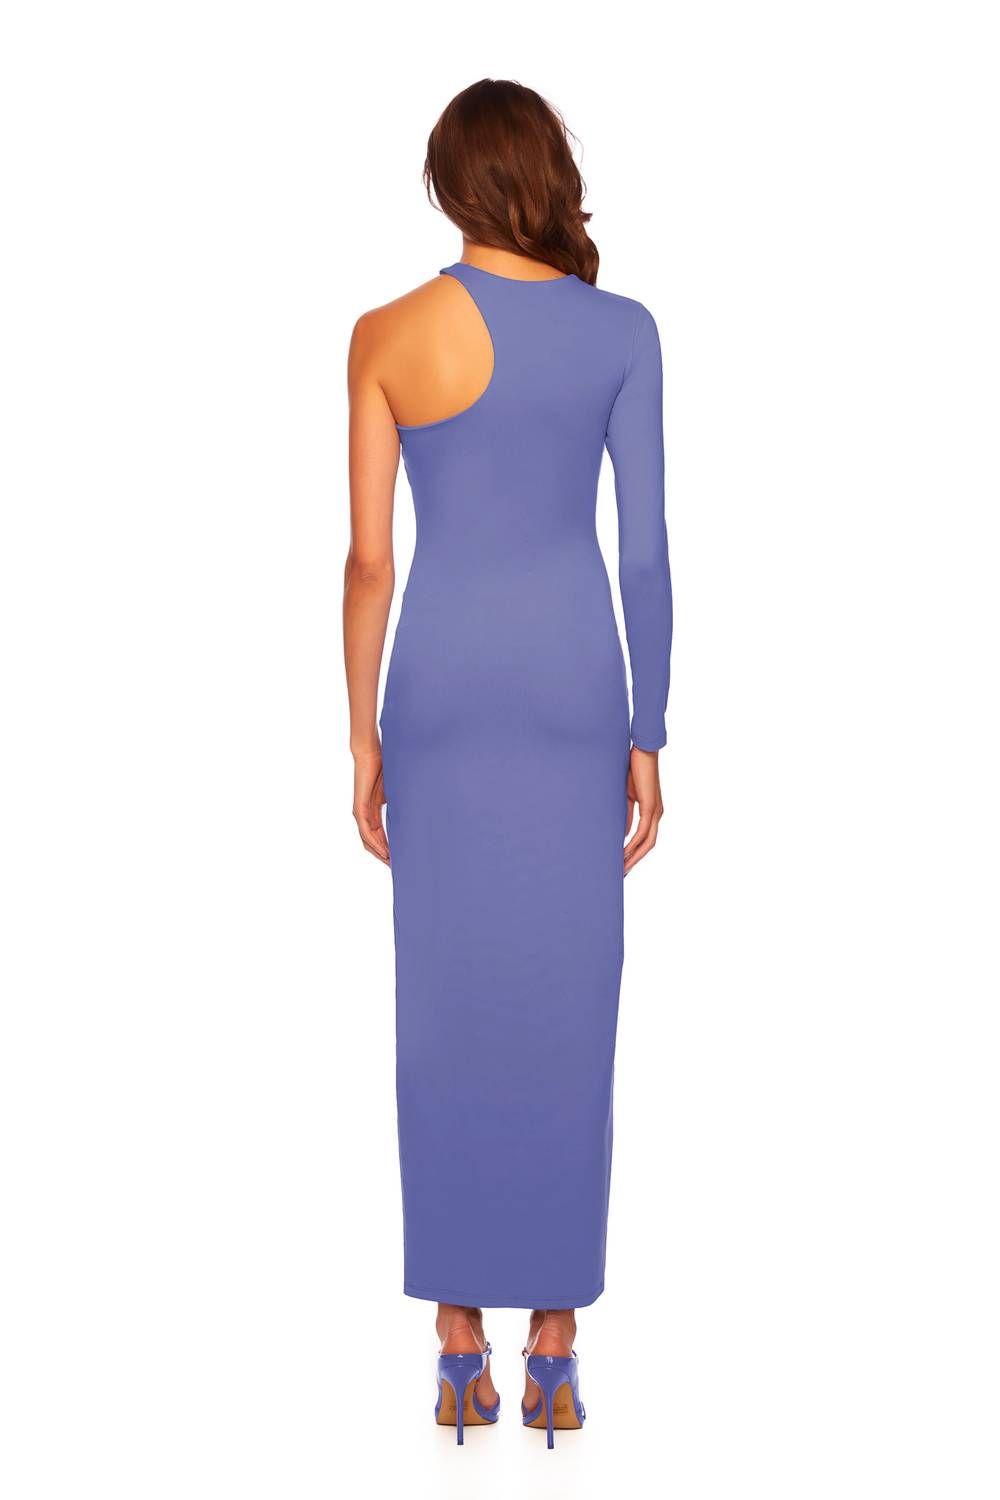 Style 1-2293391891-3236 Susana Monaco Size S Purple Side Slit Dress on Queenly